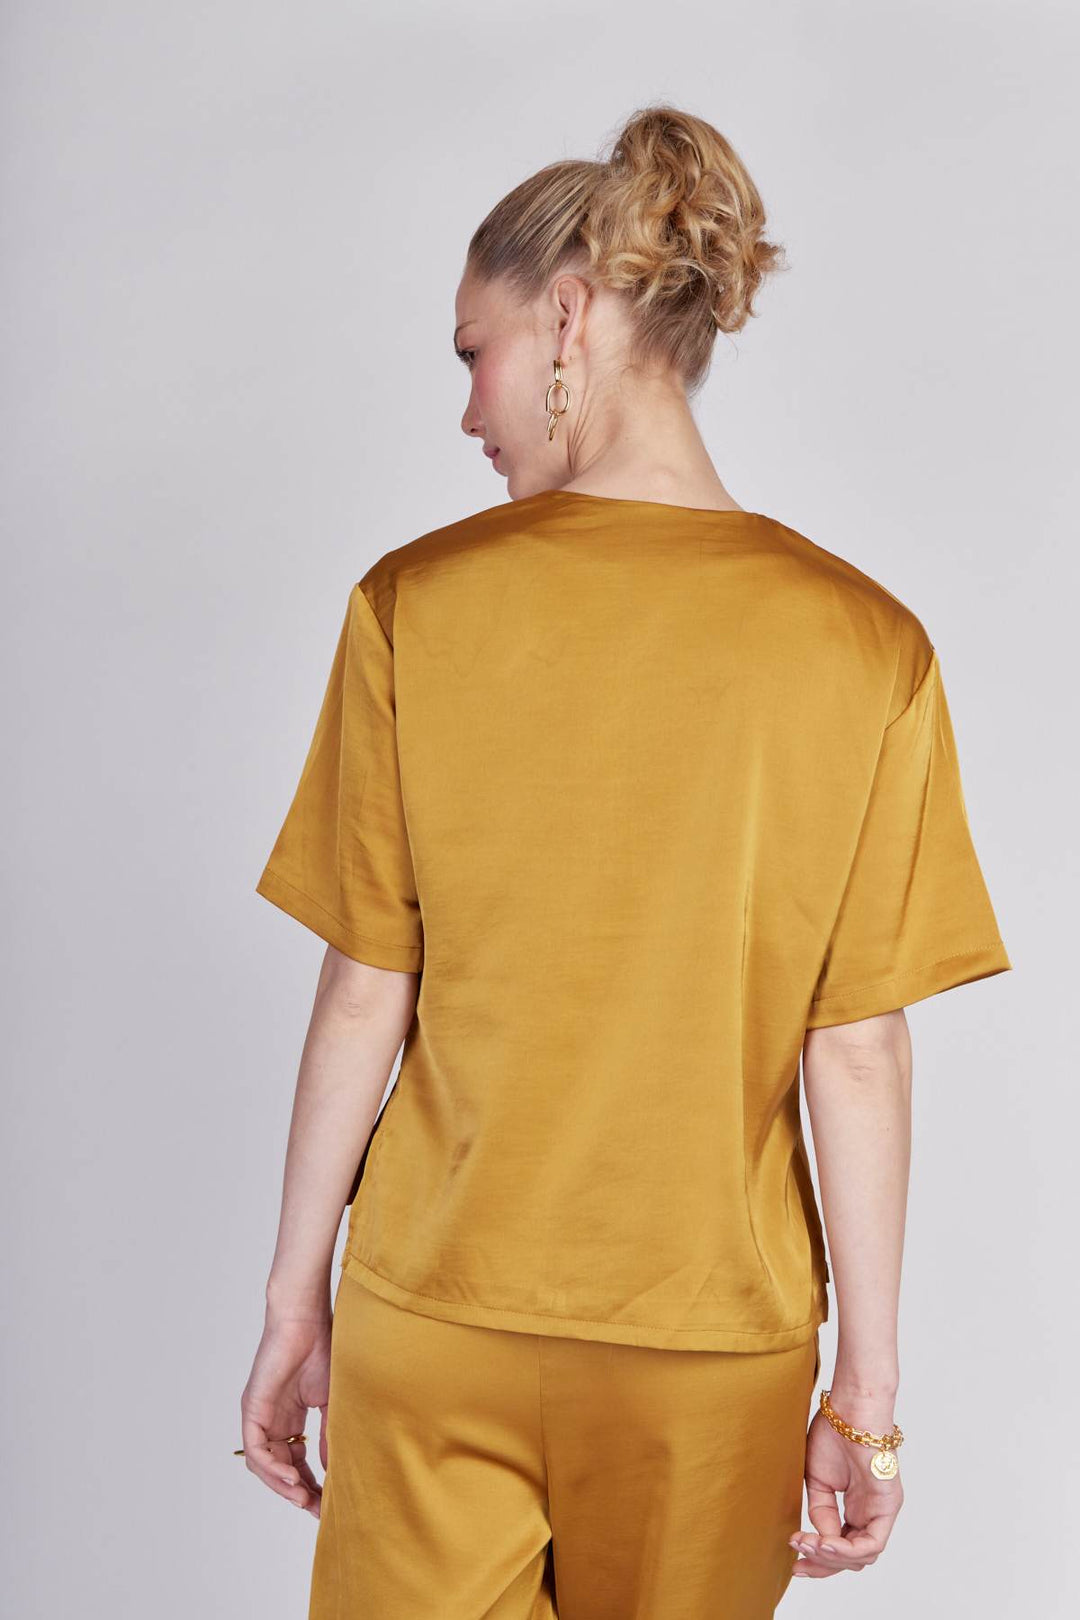 חולצת טורונטו בצבע חרדל - Razili Studio